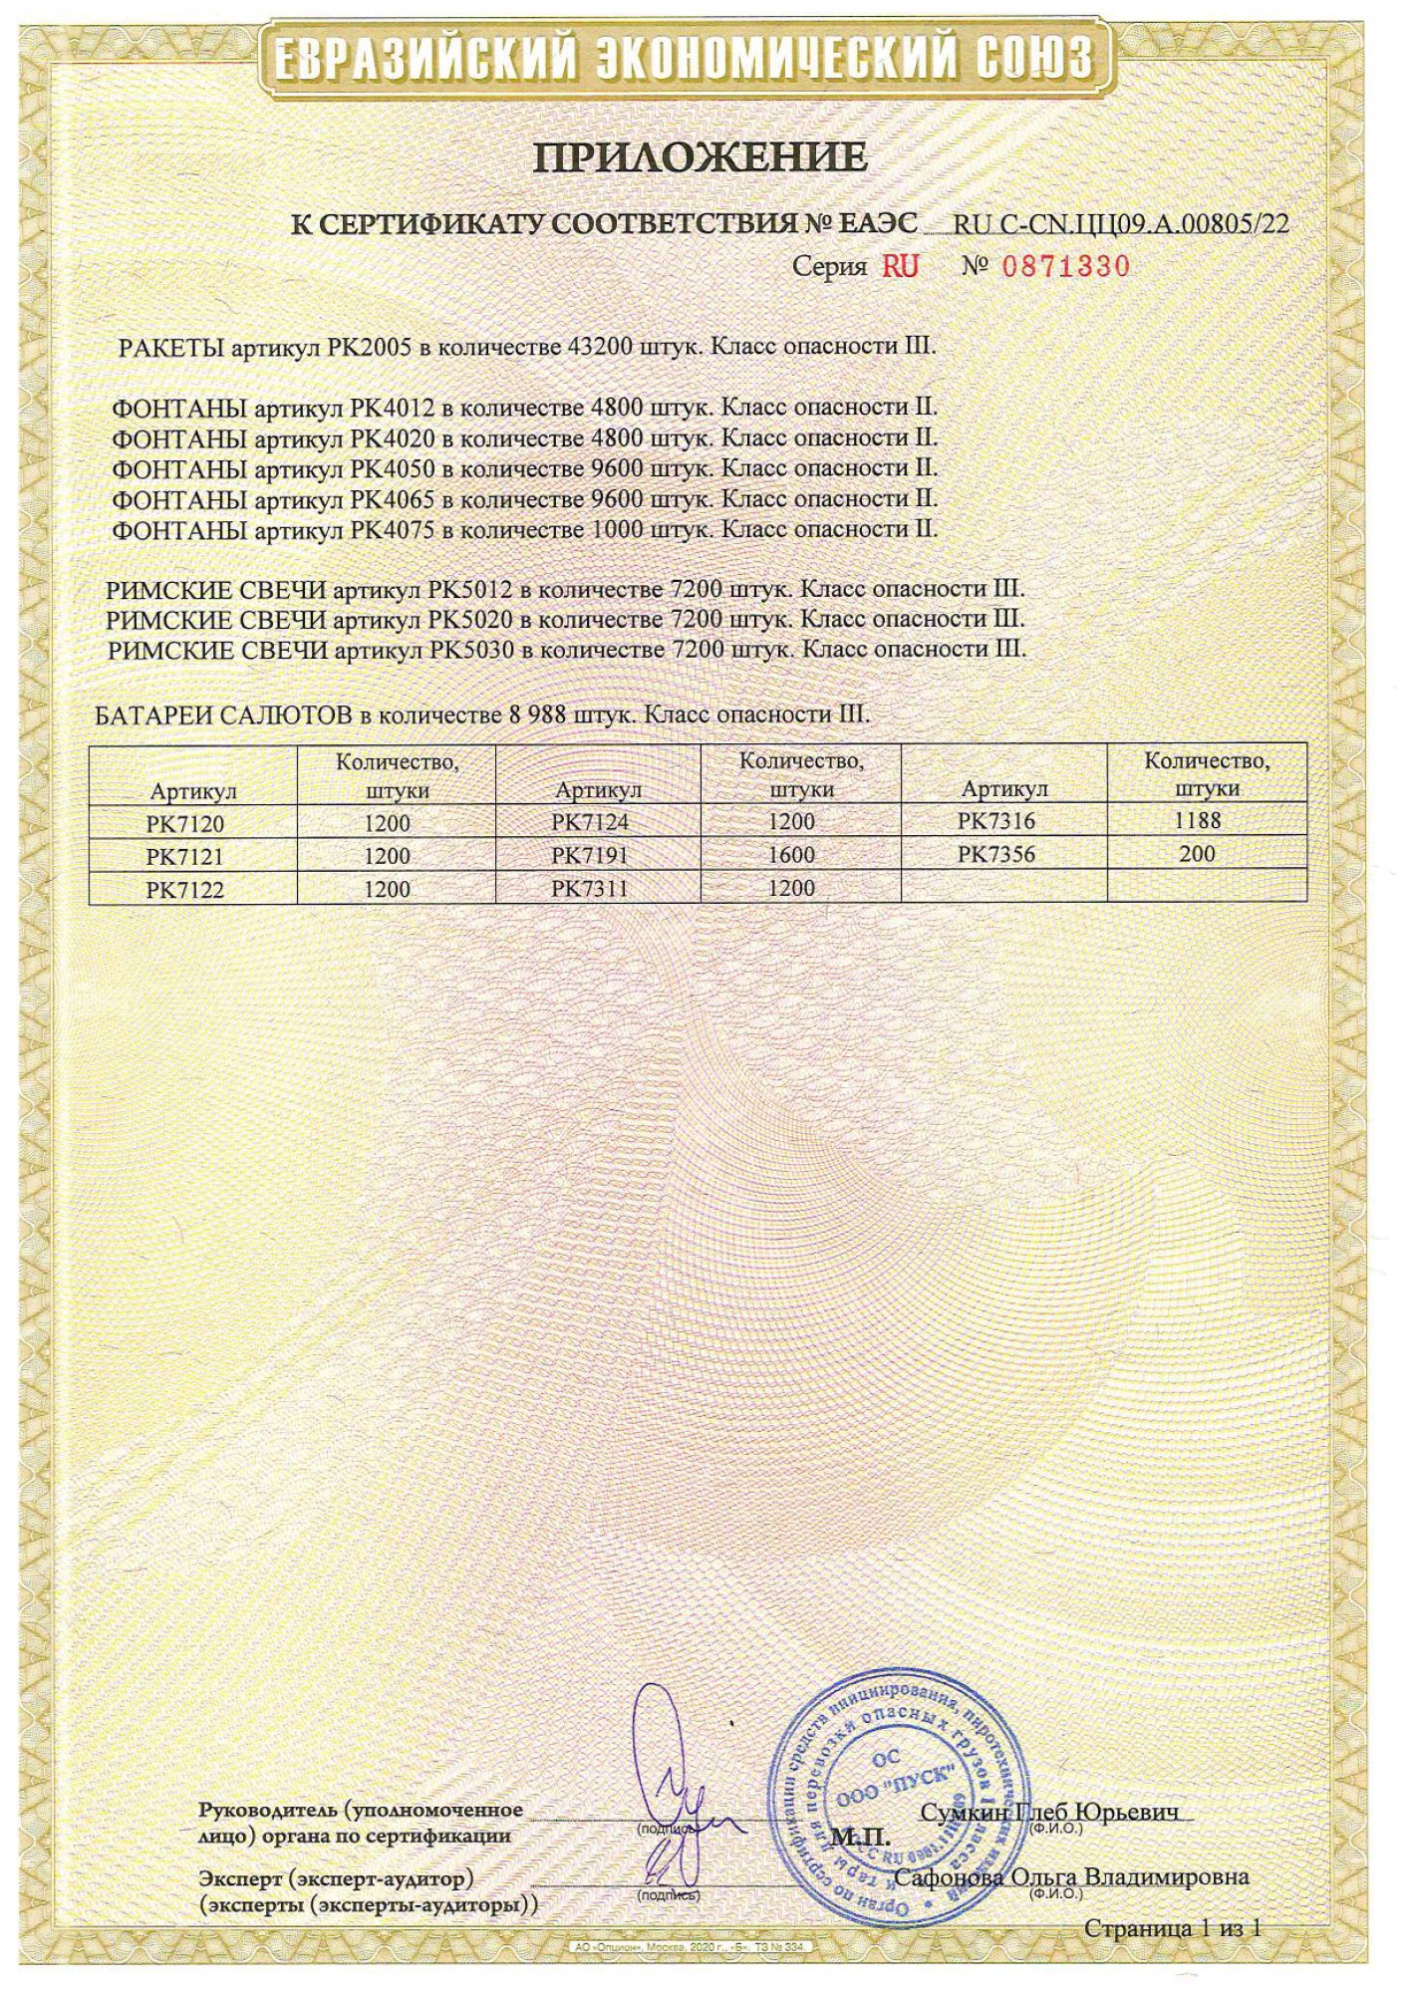 Приложение к сертификату Набор ракет Микс (арт. РК2005)